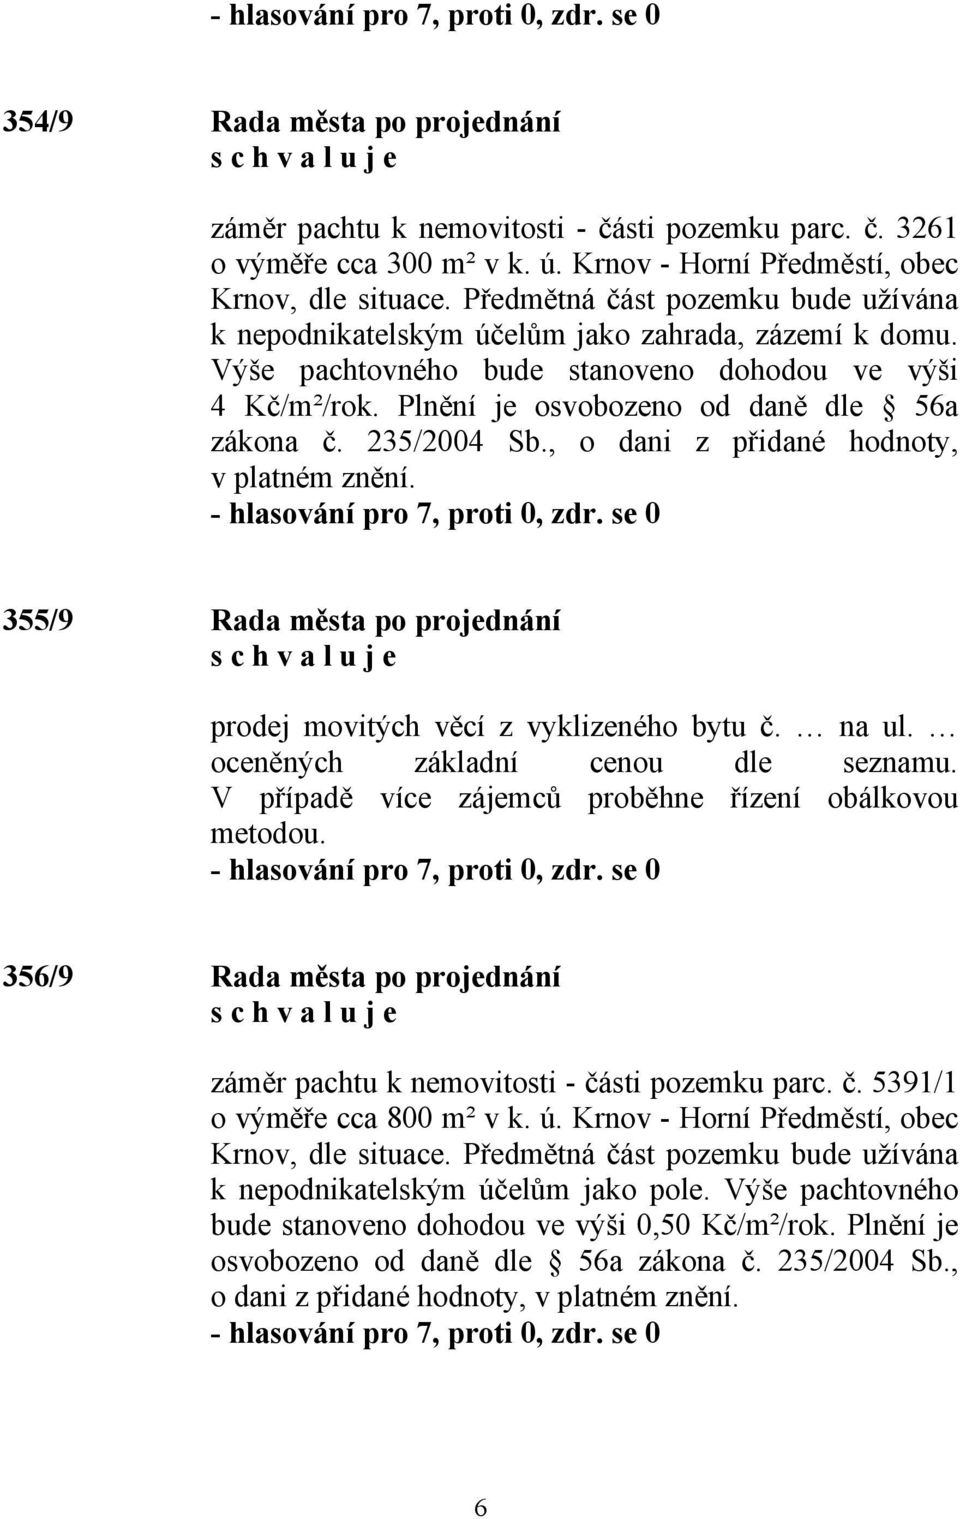 235/2004 Sb., o dani z přidané hodnoty, v platném znění. 355/9 Rada města po projednání prodej movitých věcí z vyklizeného bytu č. na ul. oceněných základní cenou dle seznamu.